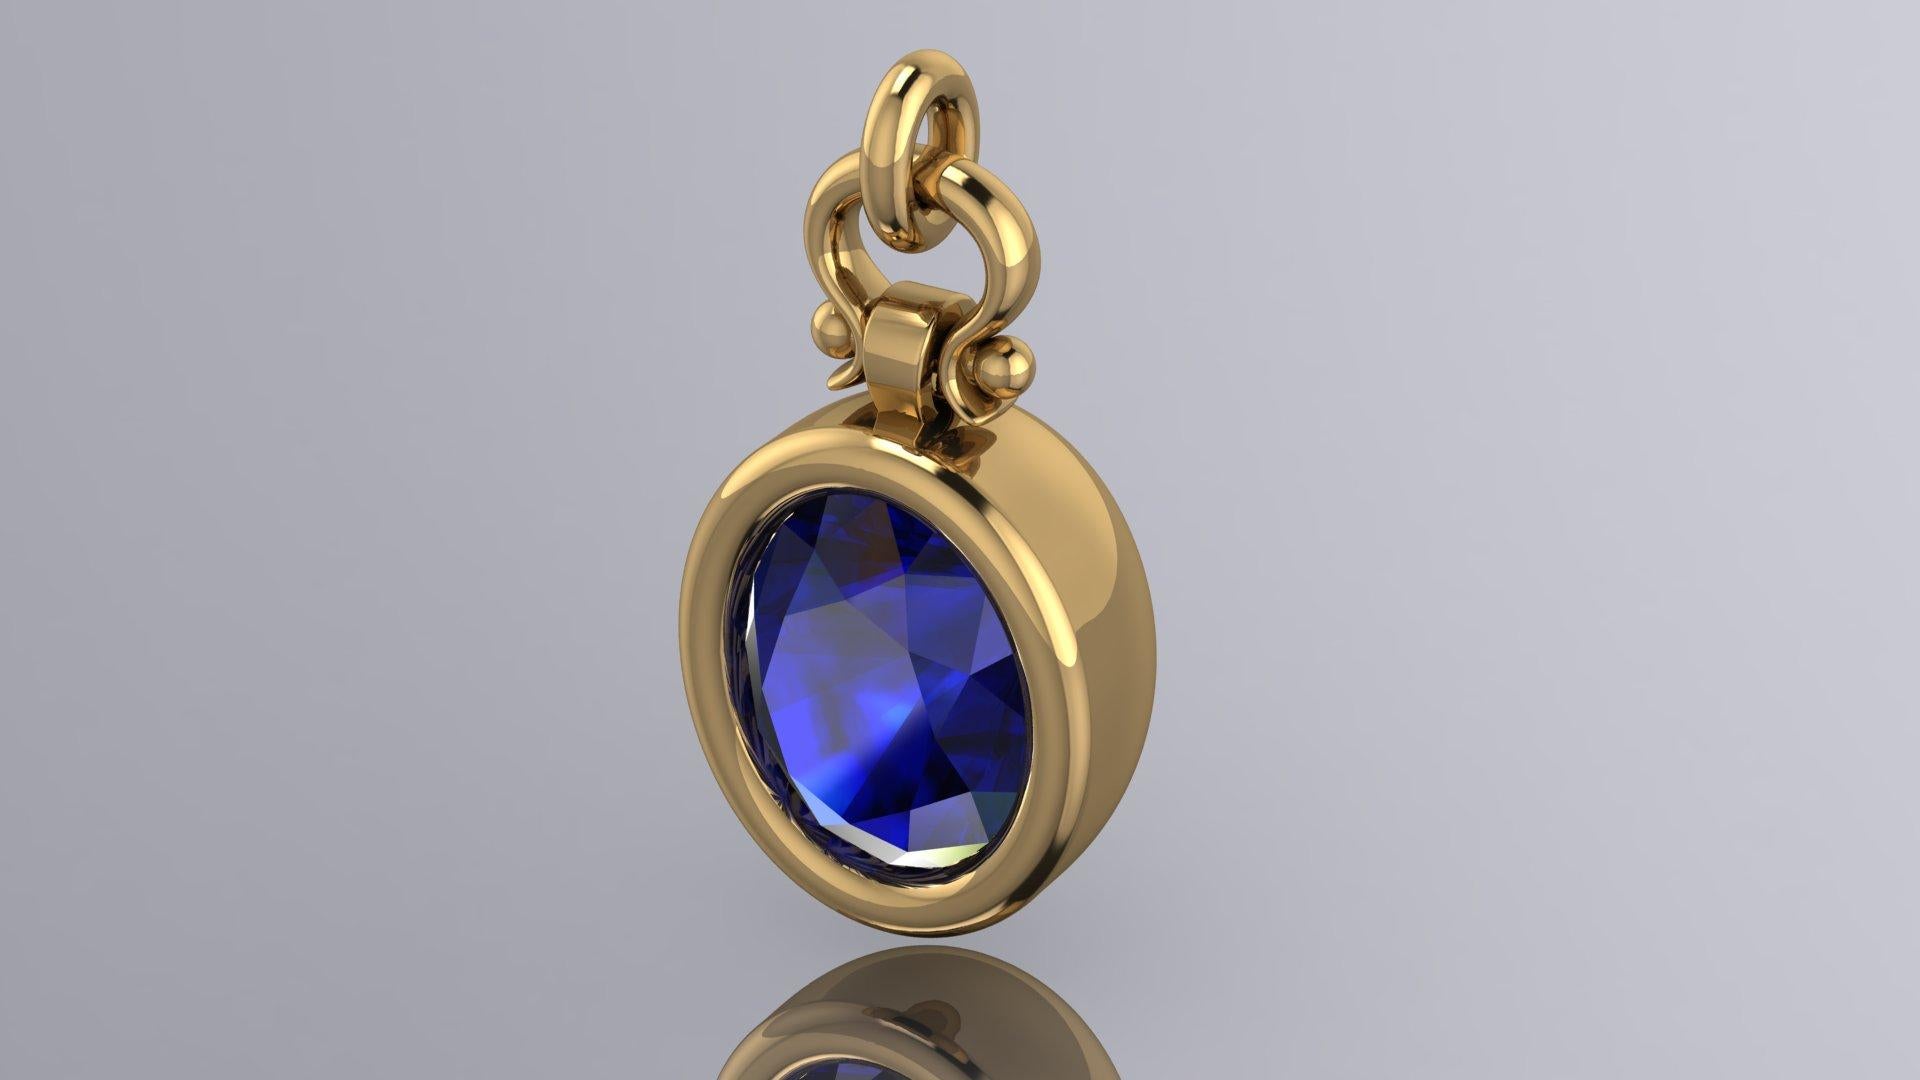 Berberyn Certified 3.01 Carat Oval Cut Blue Sapphire Pendant Necklace in 18k For Sale 1